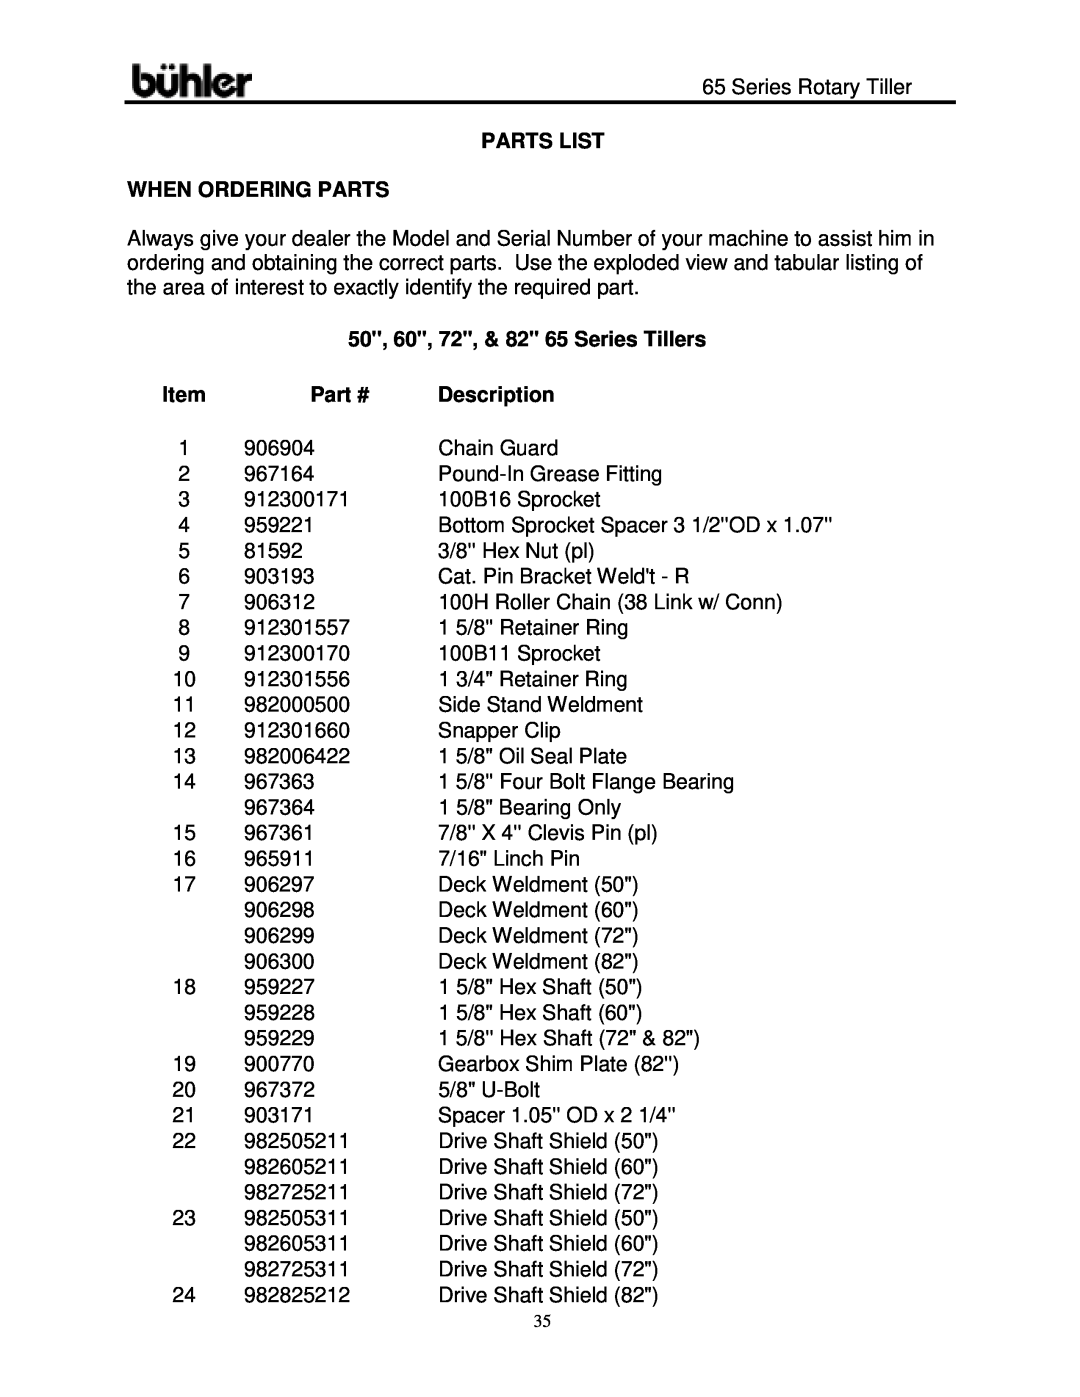 Buhler warranty Parts List When Ordering Parts, 50, 60, 72, & 82 65 Series Tillers, Description 